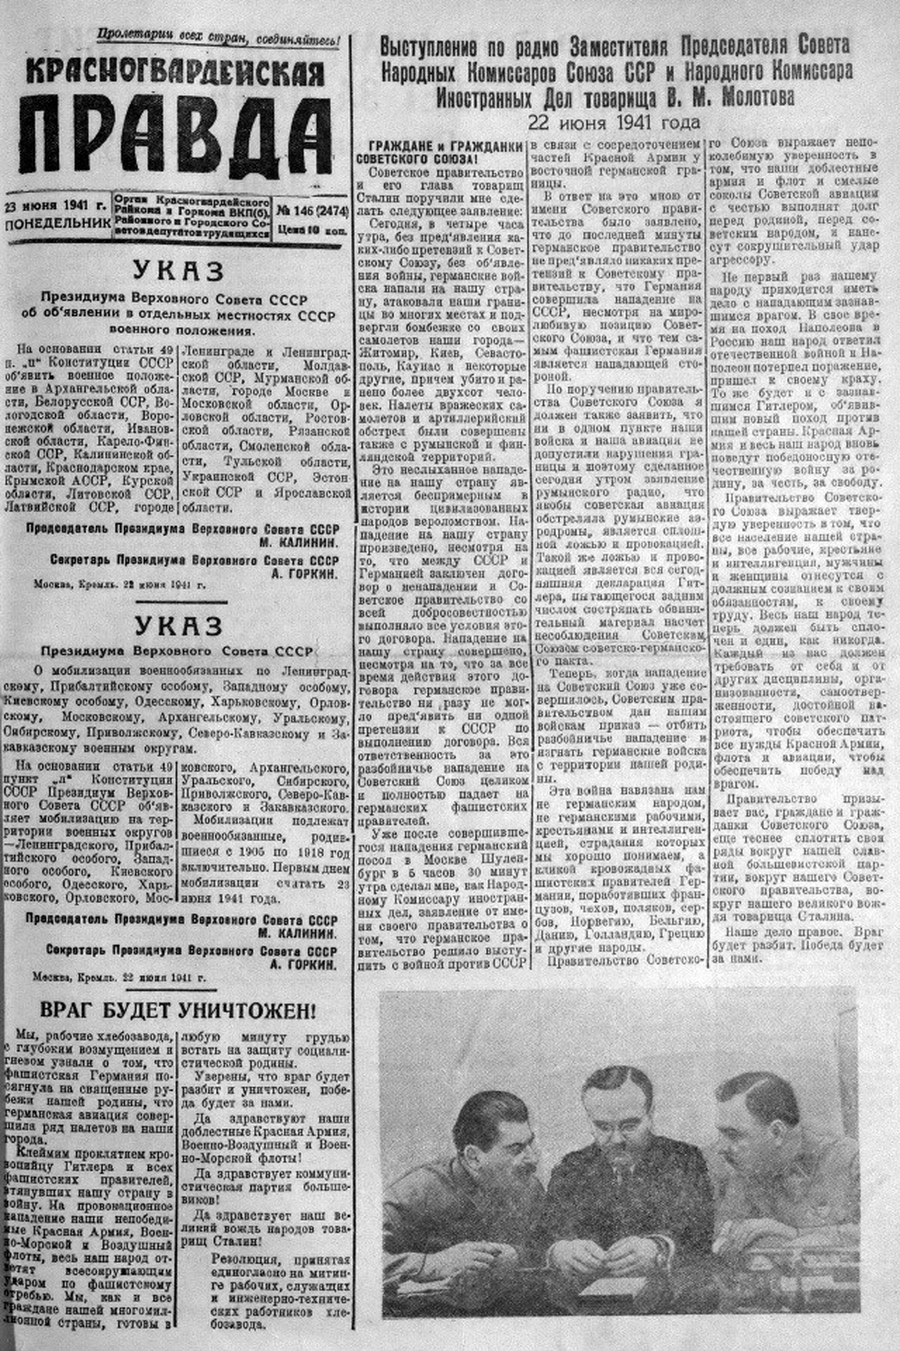 В этот день гатчинский вестник объявил о начале войны